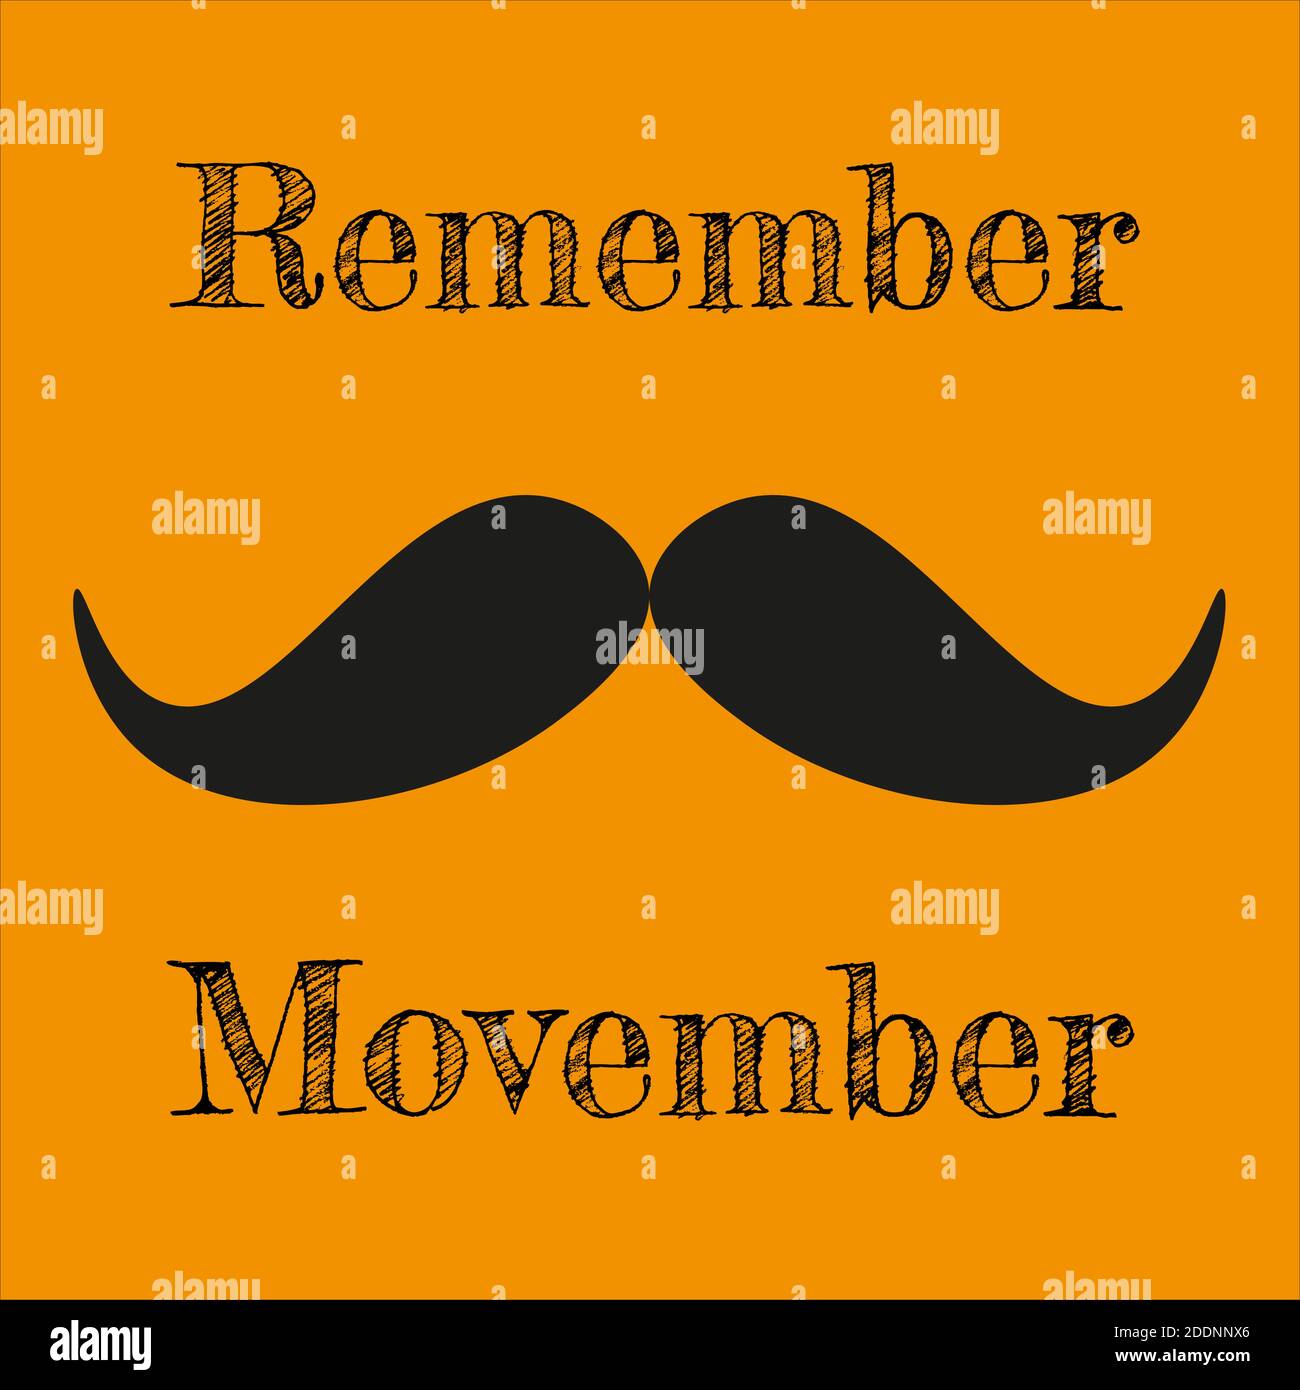 Erinnern Sie sich Movember - Prostatakrebs Bewusstsein Monat. Männer Gesundheit Konzept Vektor-Illustration auf einem orangen Hintergrund Stock Vektor